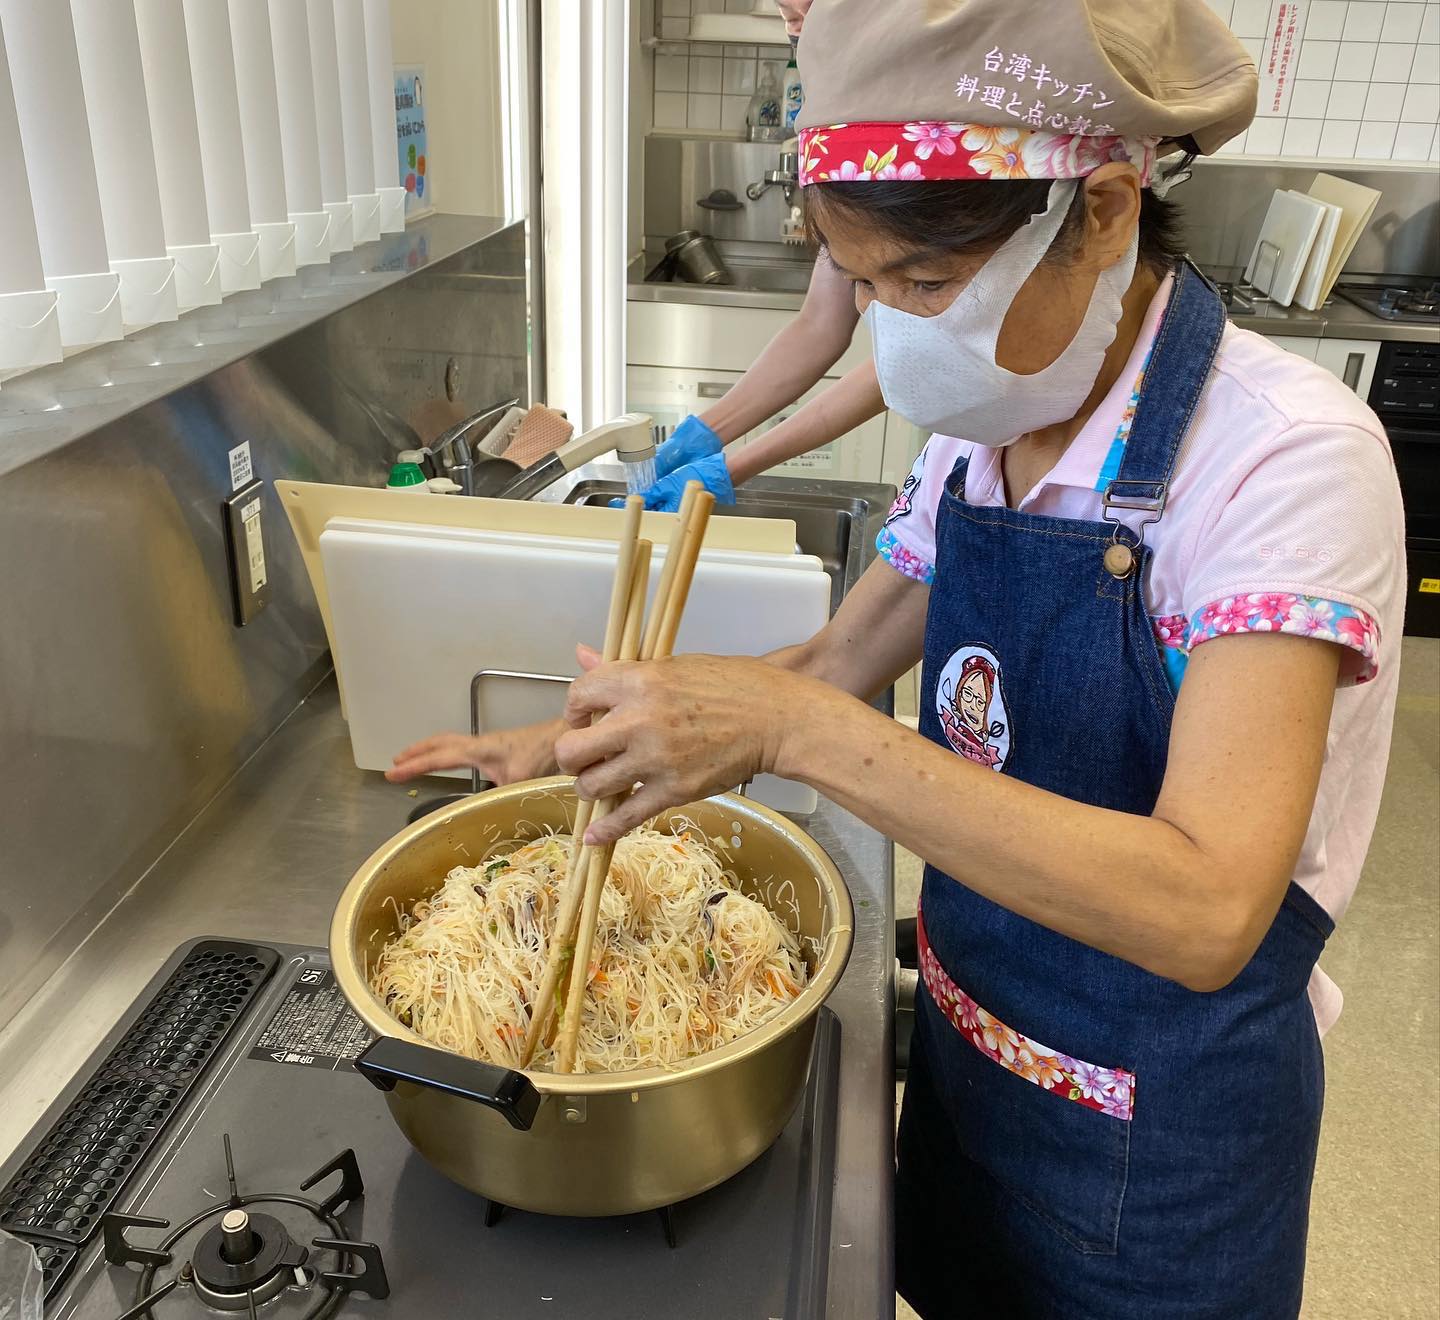 「大阪弁天町臺灣華語教室」負責人林美莉老師為大家準備的台式炒米粉